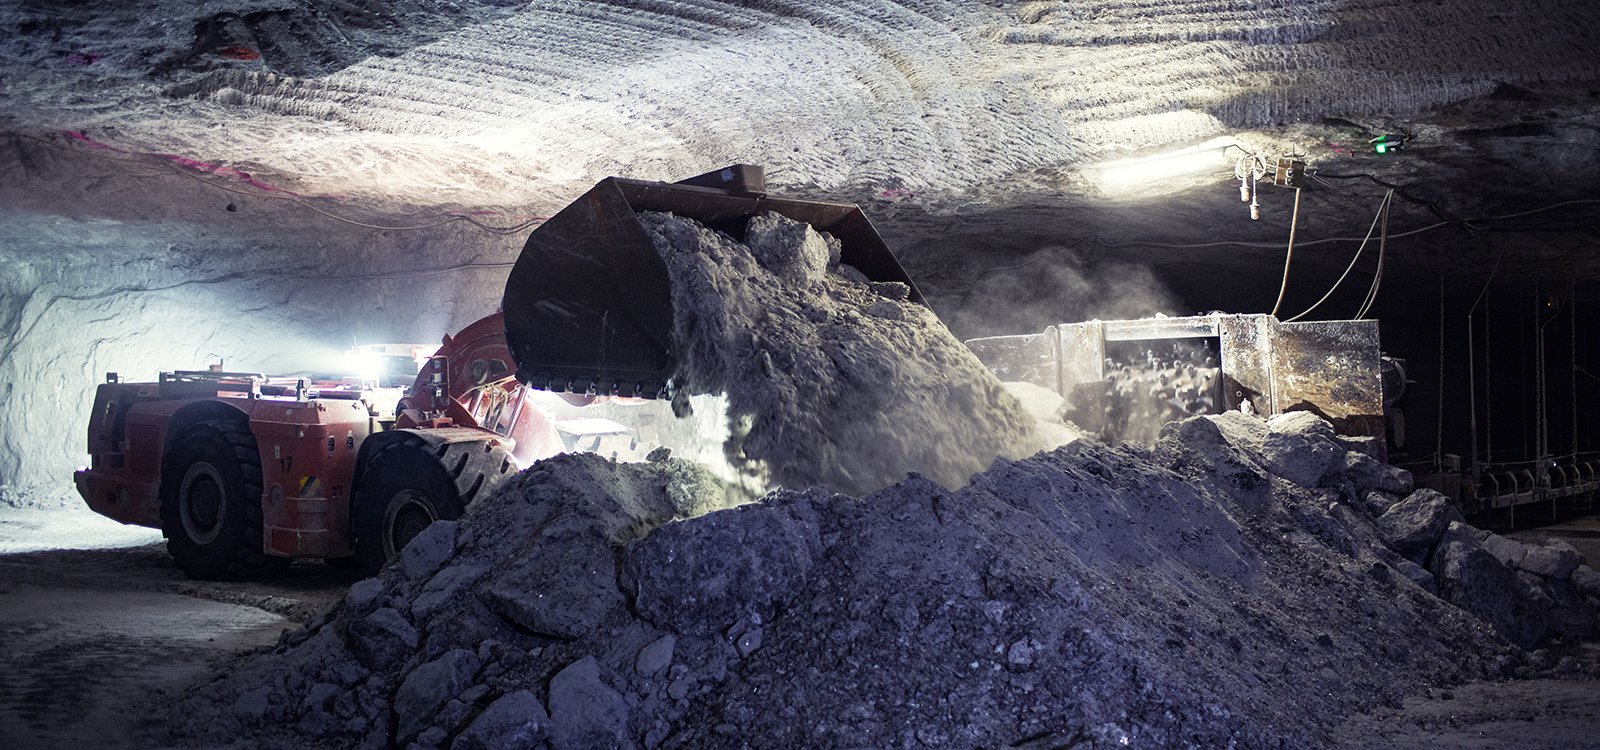 Heilbronn ainda utiliza perfuração e desmonte em algumas partes da mina. Aqui, as carregadeiras da Sandvik transportam o sal extraído para o britador.